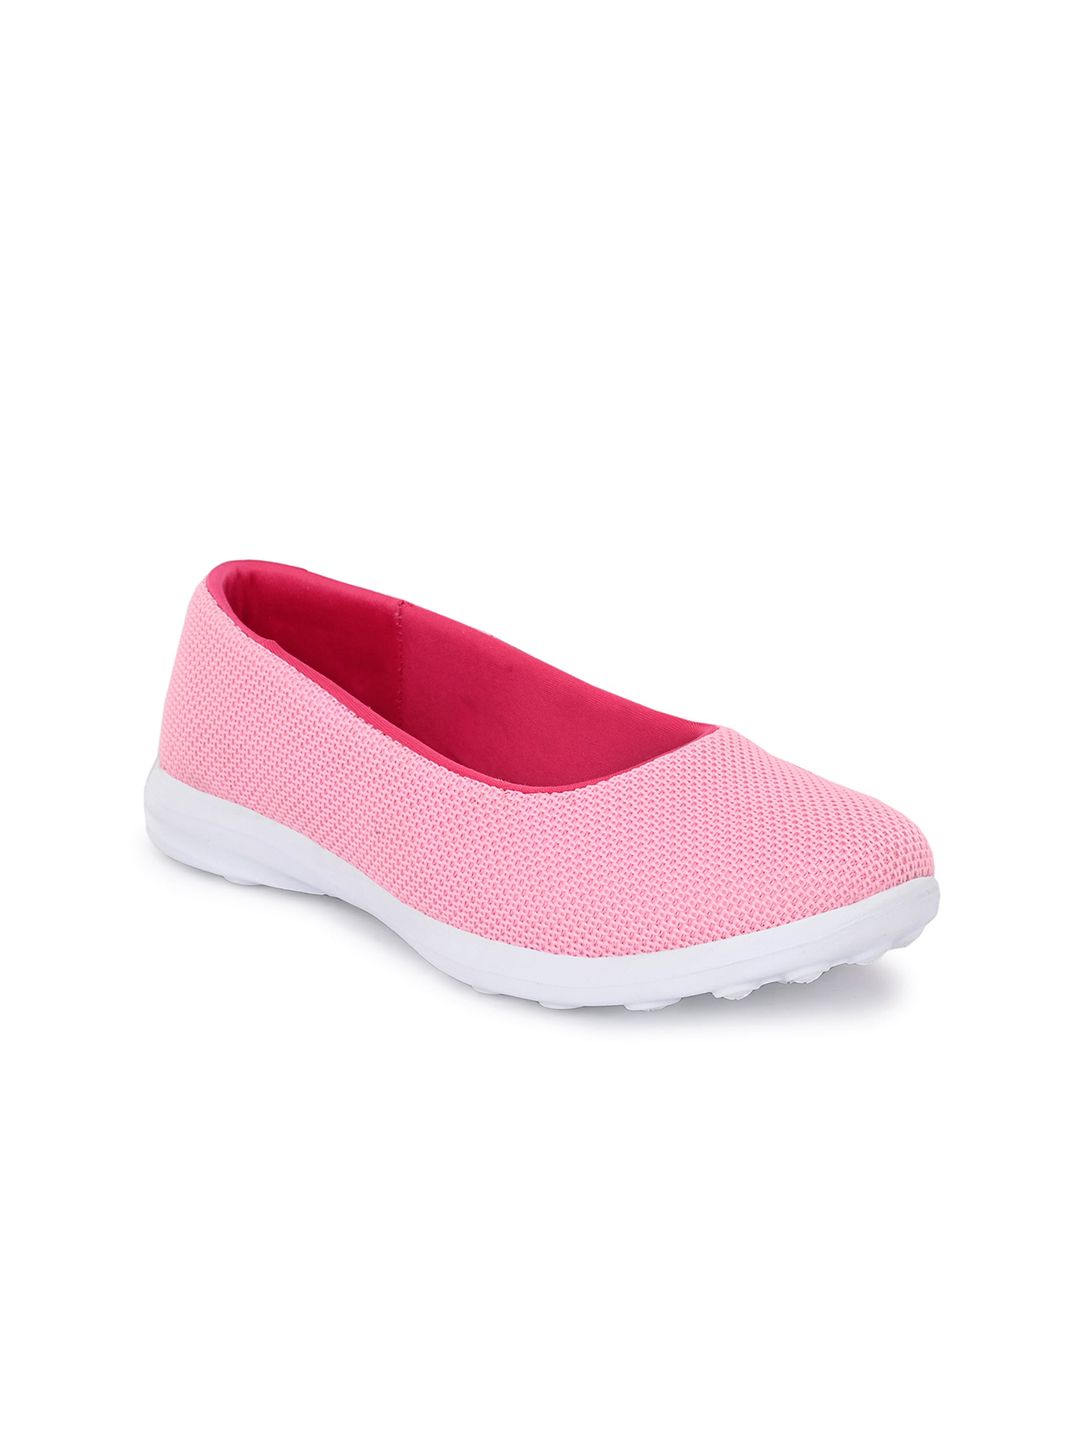 Yuuki Women Pink Walking Shoes Price in India